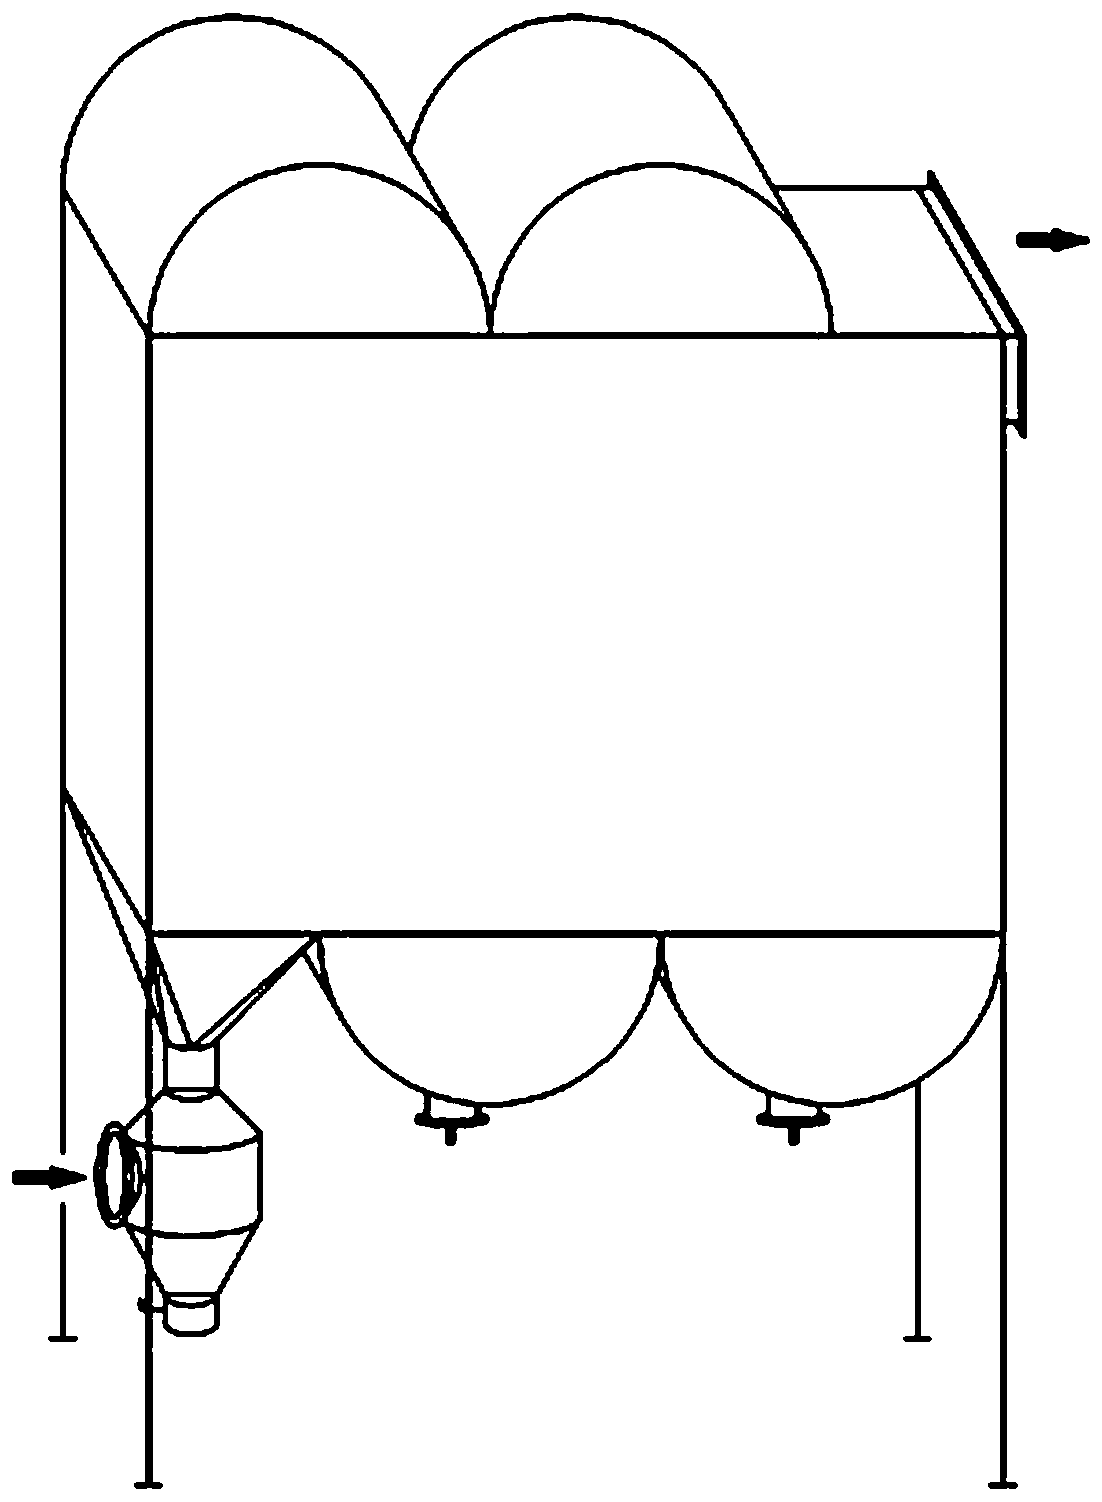 Horizontal semi-dry desulfurization box process technology